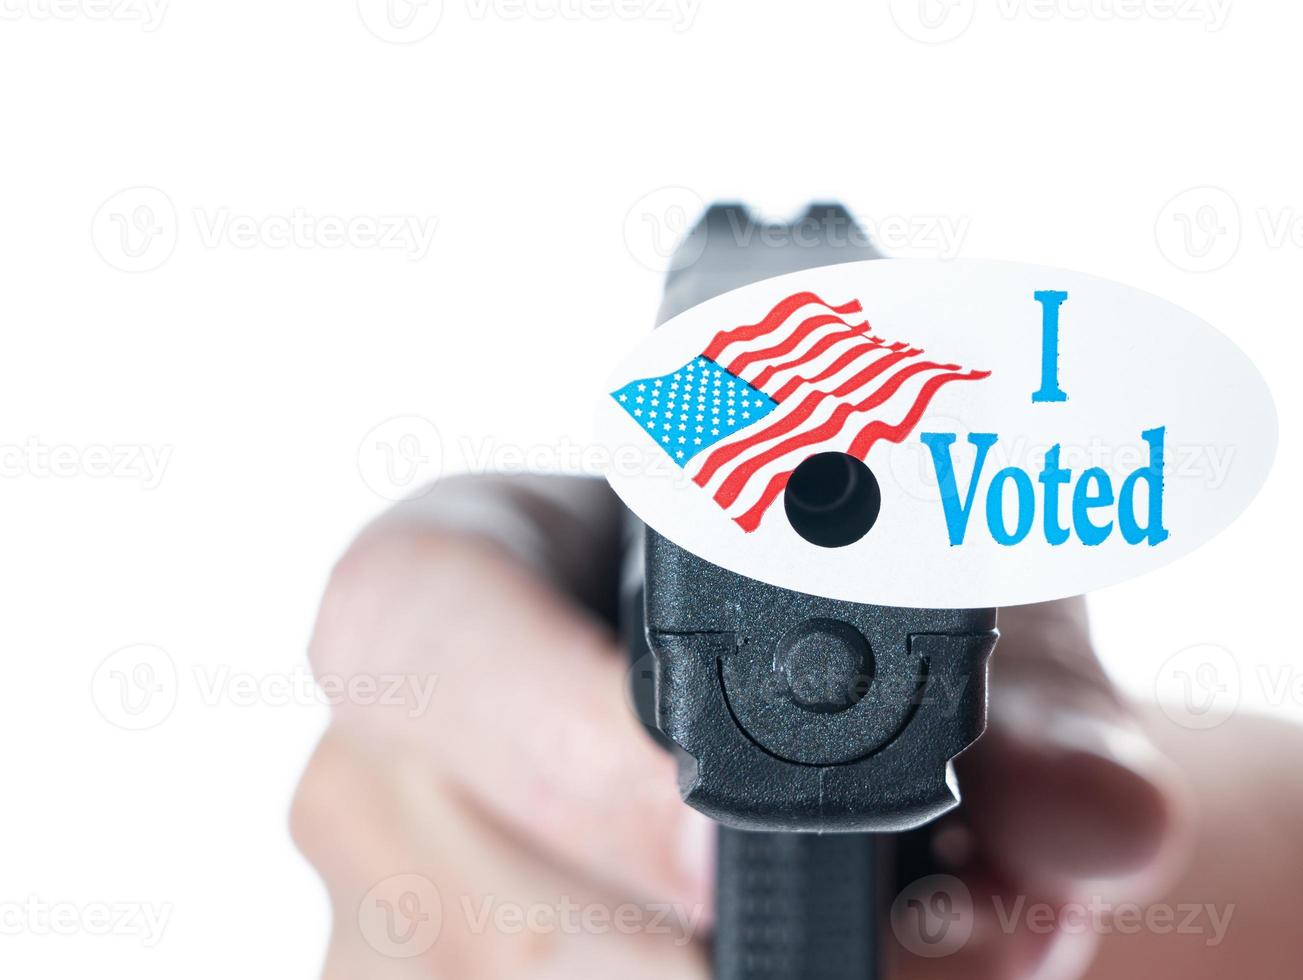 ich habe heute gewählt kampagnenknopf mit loch auf pistole für wählerunterdrückung foto